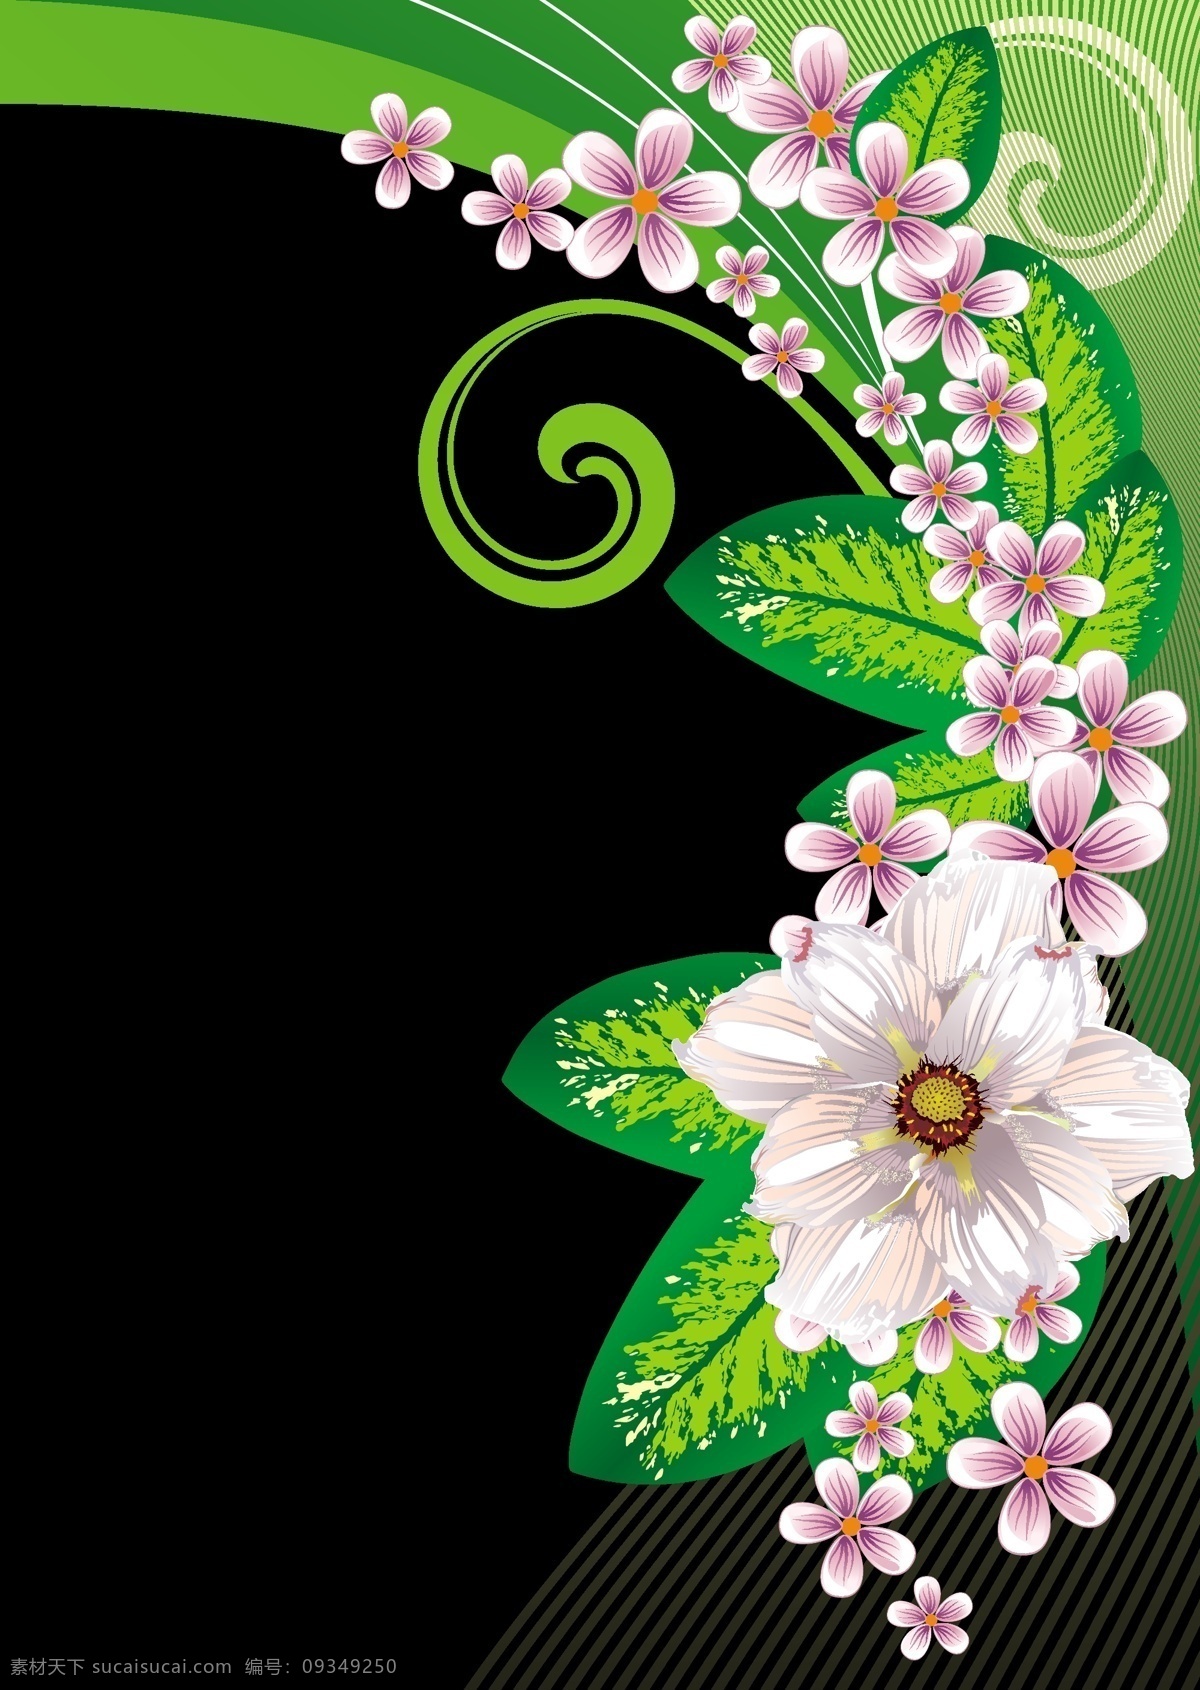 精美 花纹 矢量 包 包装 材料 花卉 精致 时尚 矢量鲜花 图案 叶子 动感的线条 绿色的叶子 线条流畅 矢量图 现代科技